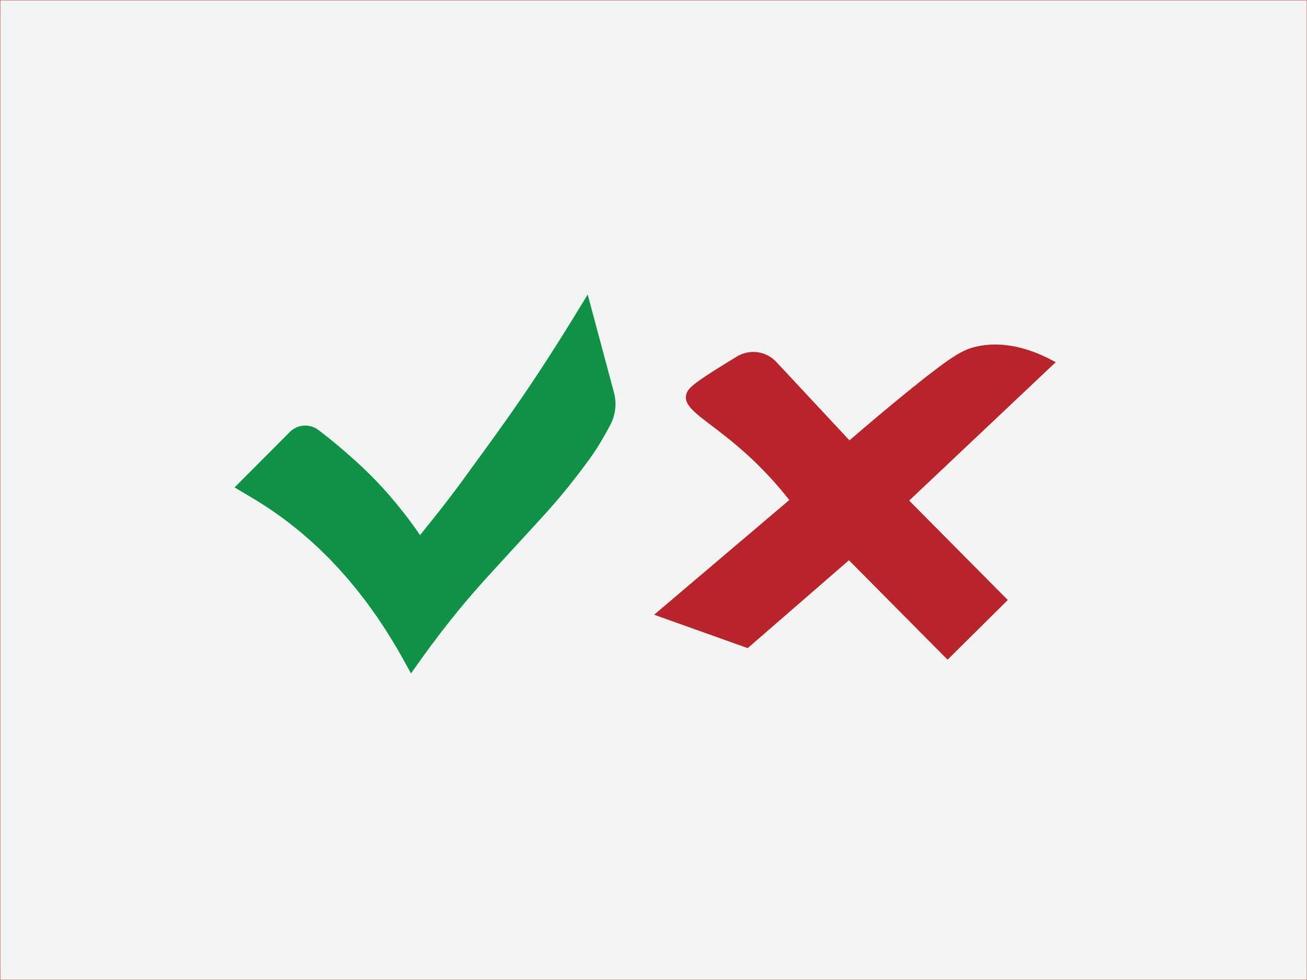 marca de seleção, vetor de ícone de lista de verificação. assinale e cruze os sinais. marca de seleção verde ok e ícone vermelho x errado. sim ou nenhum vetor de ícone.